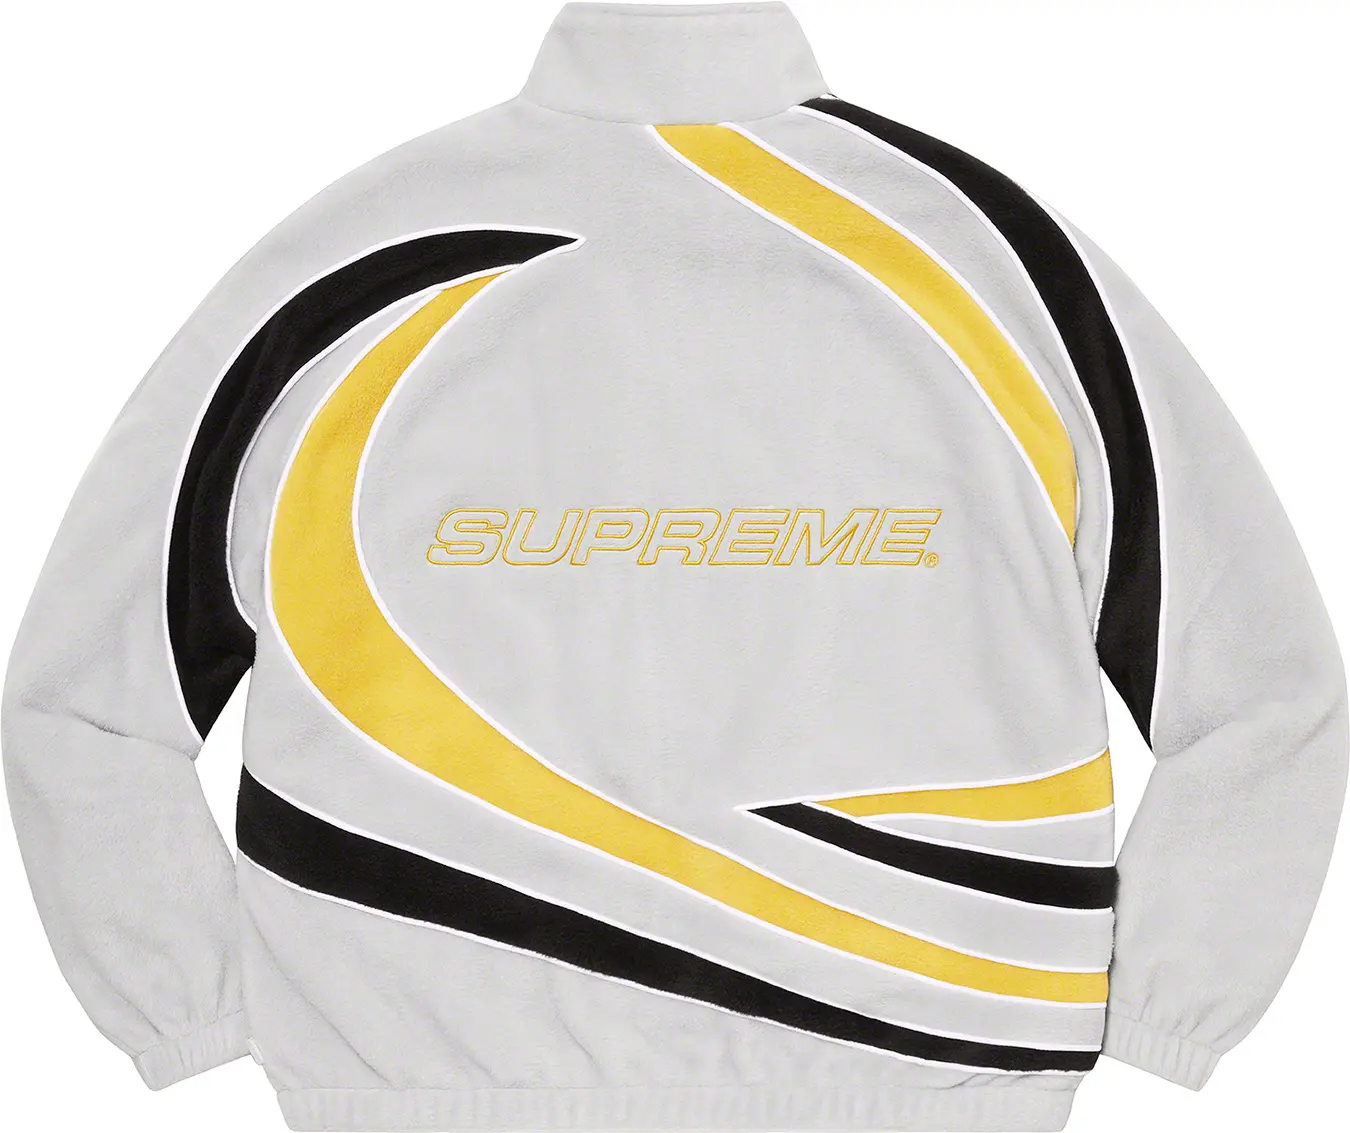 Supreme Racing Fleece Jacket